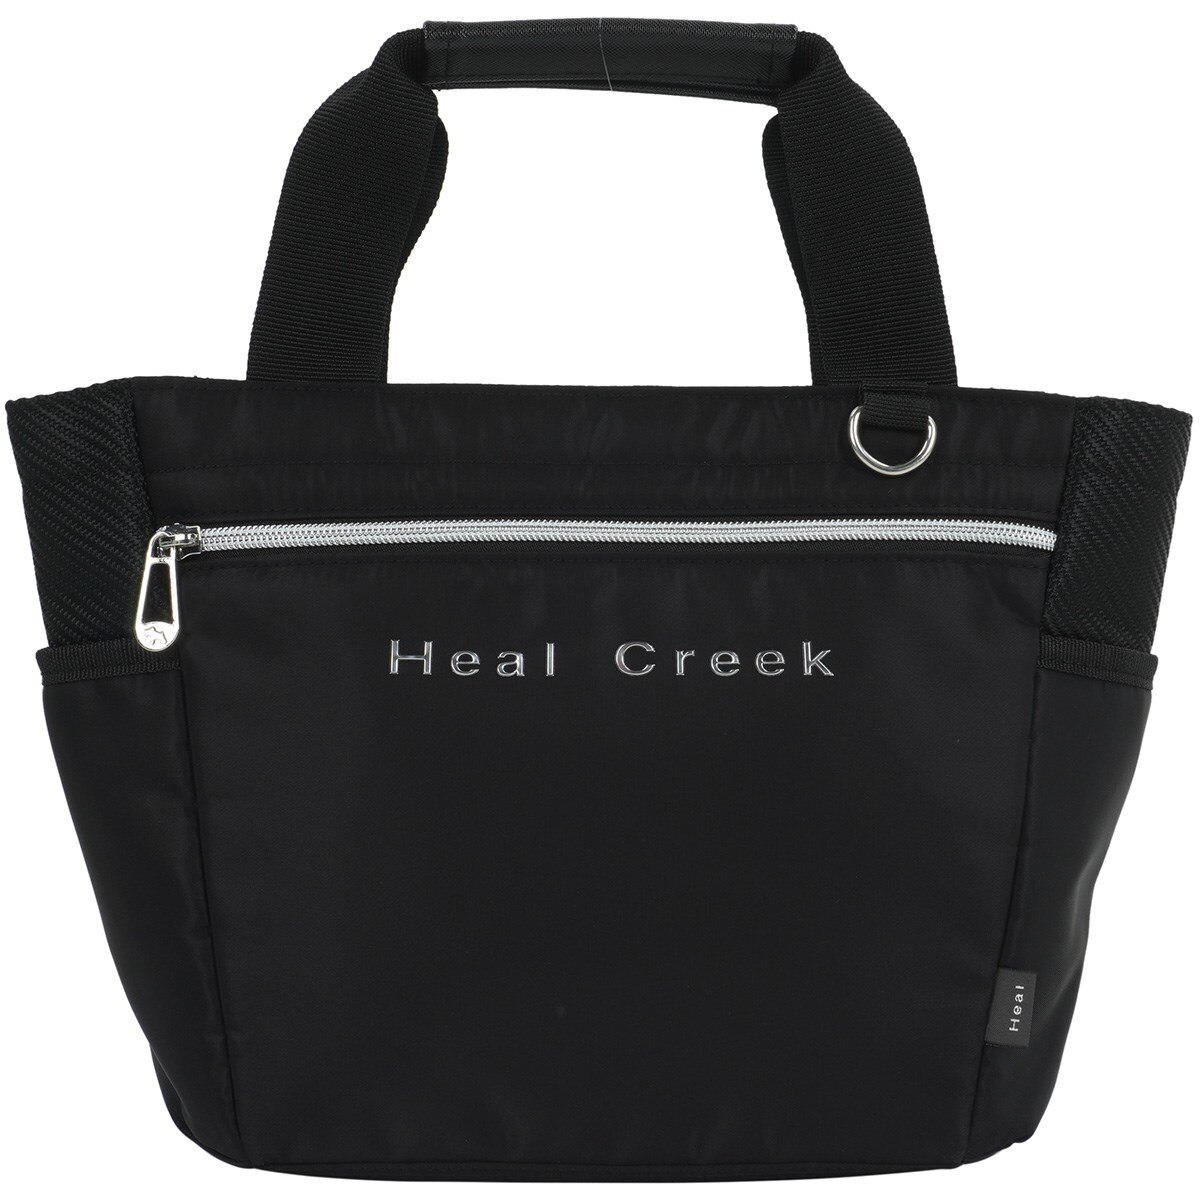 ナイロンオックス×合皮カートバッグ(ラウンドバッグ)|Heal Creek